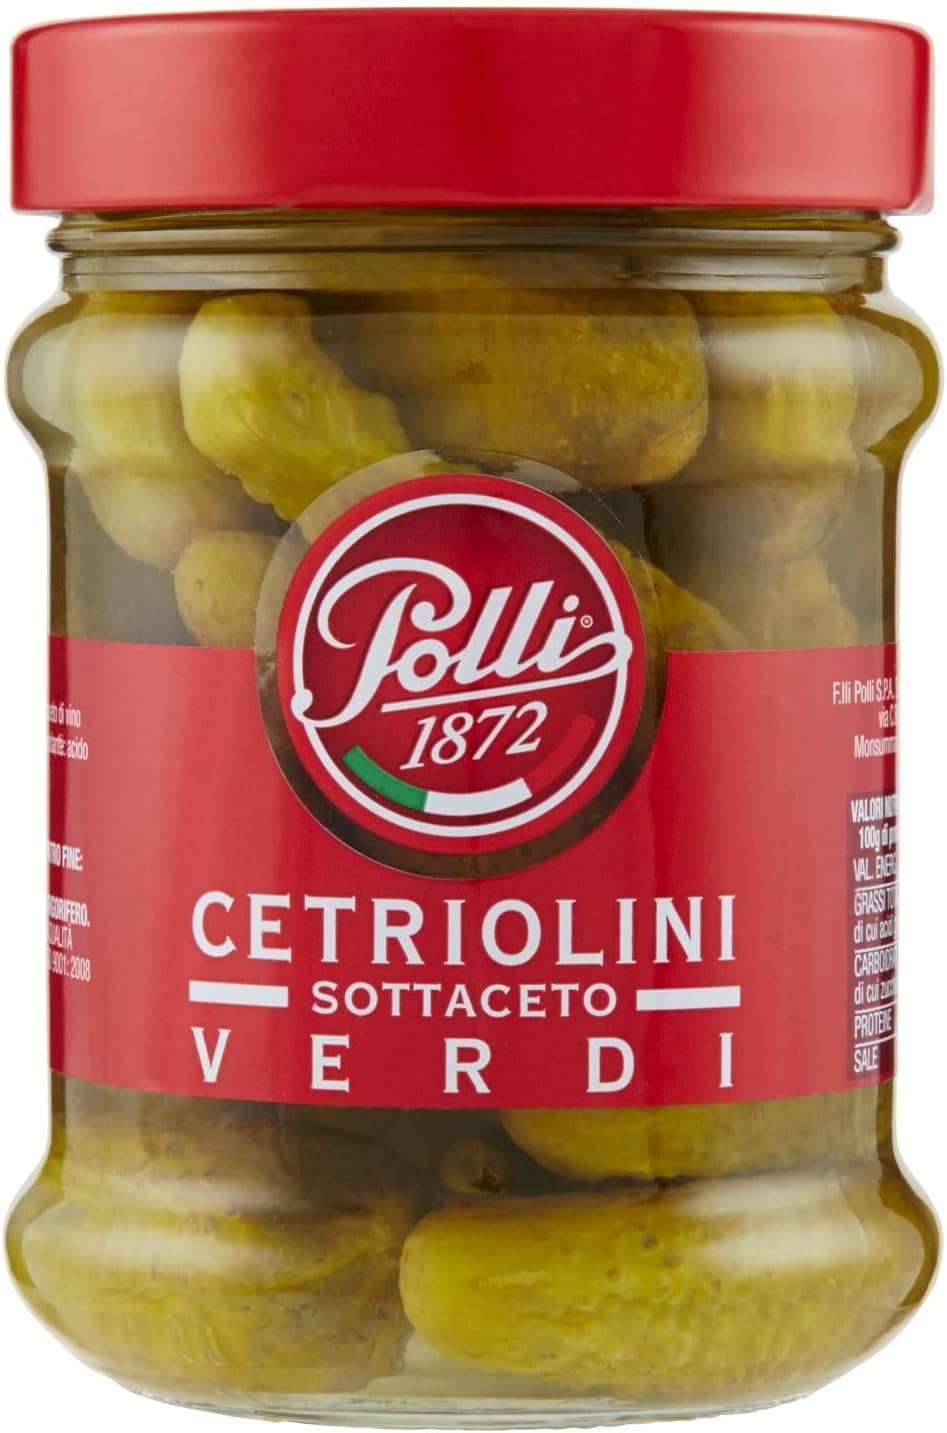 Polli Cetriolini Verdi Sottaceto - 300 g